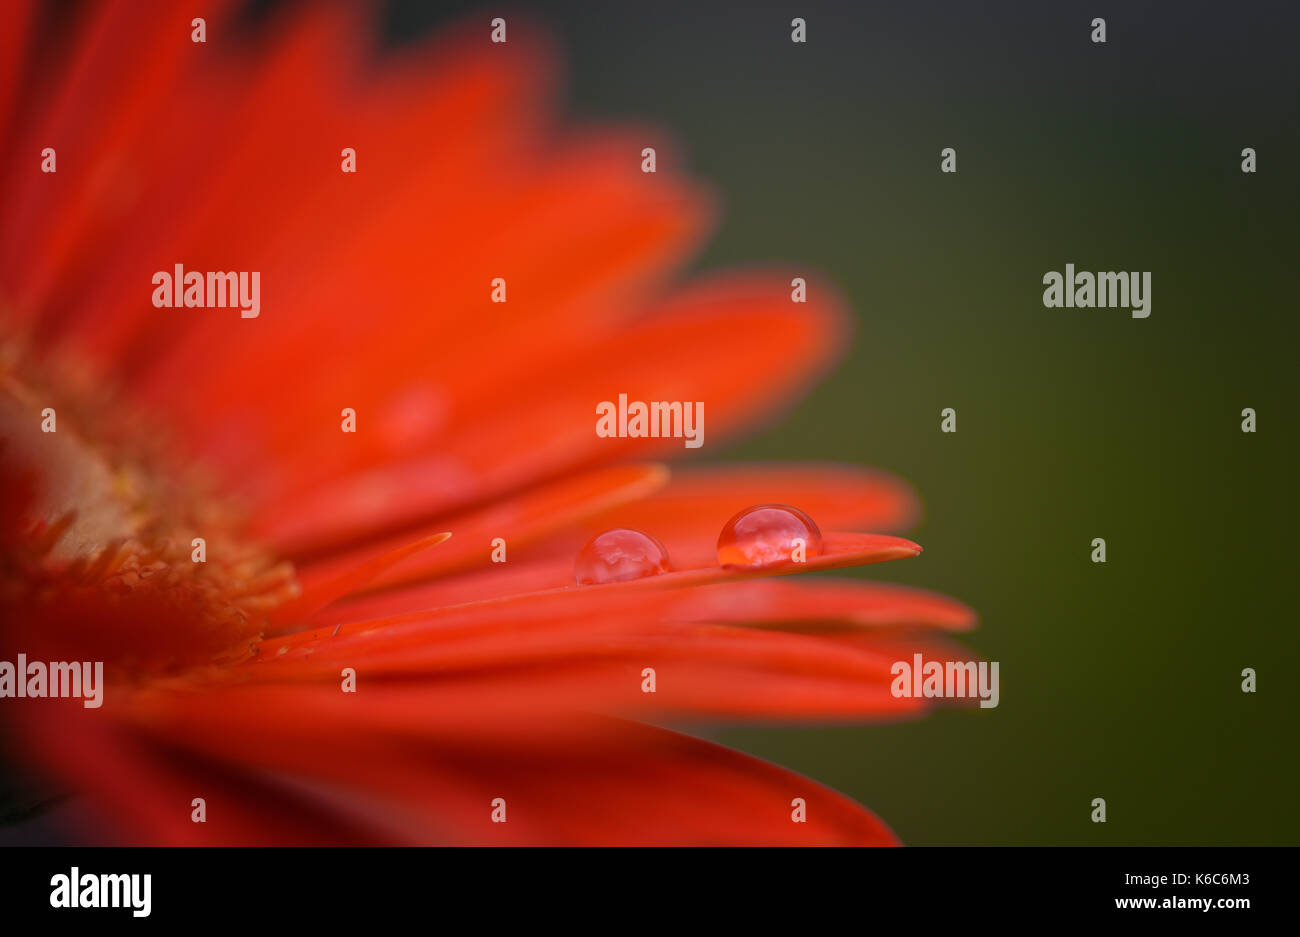 Macro close up fiore immagine fotografia di Gerbera daisy fiore in un rosso di colore arancione, con gocce di acqua e copia spazio con giardino verde sullo sfondo Foto Stock